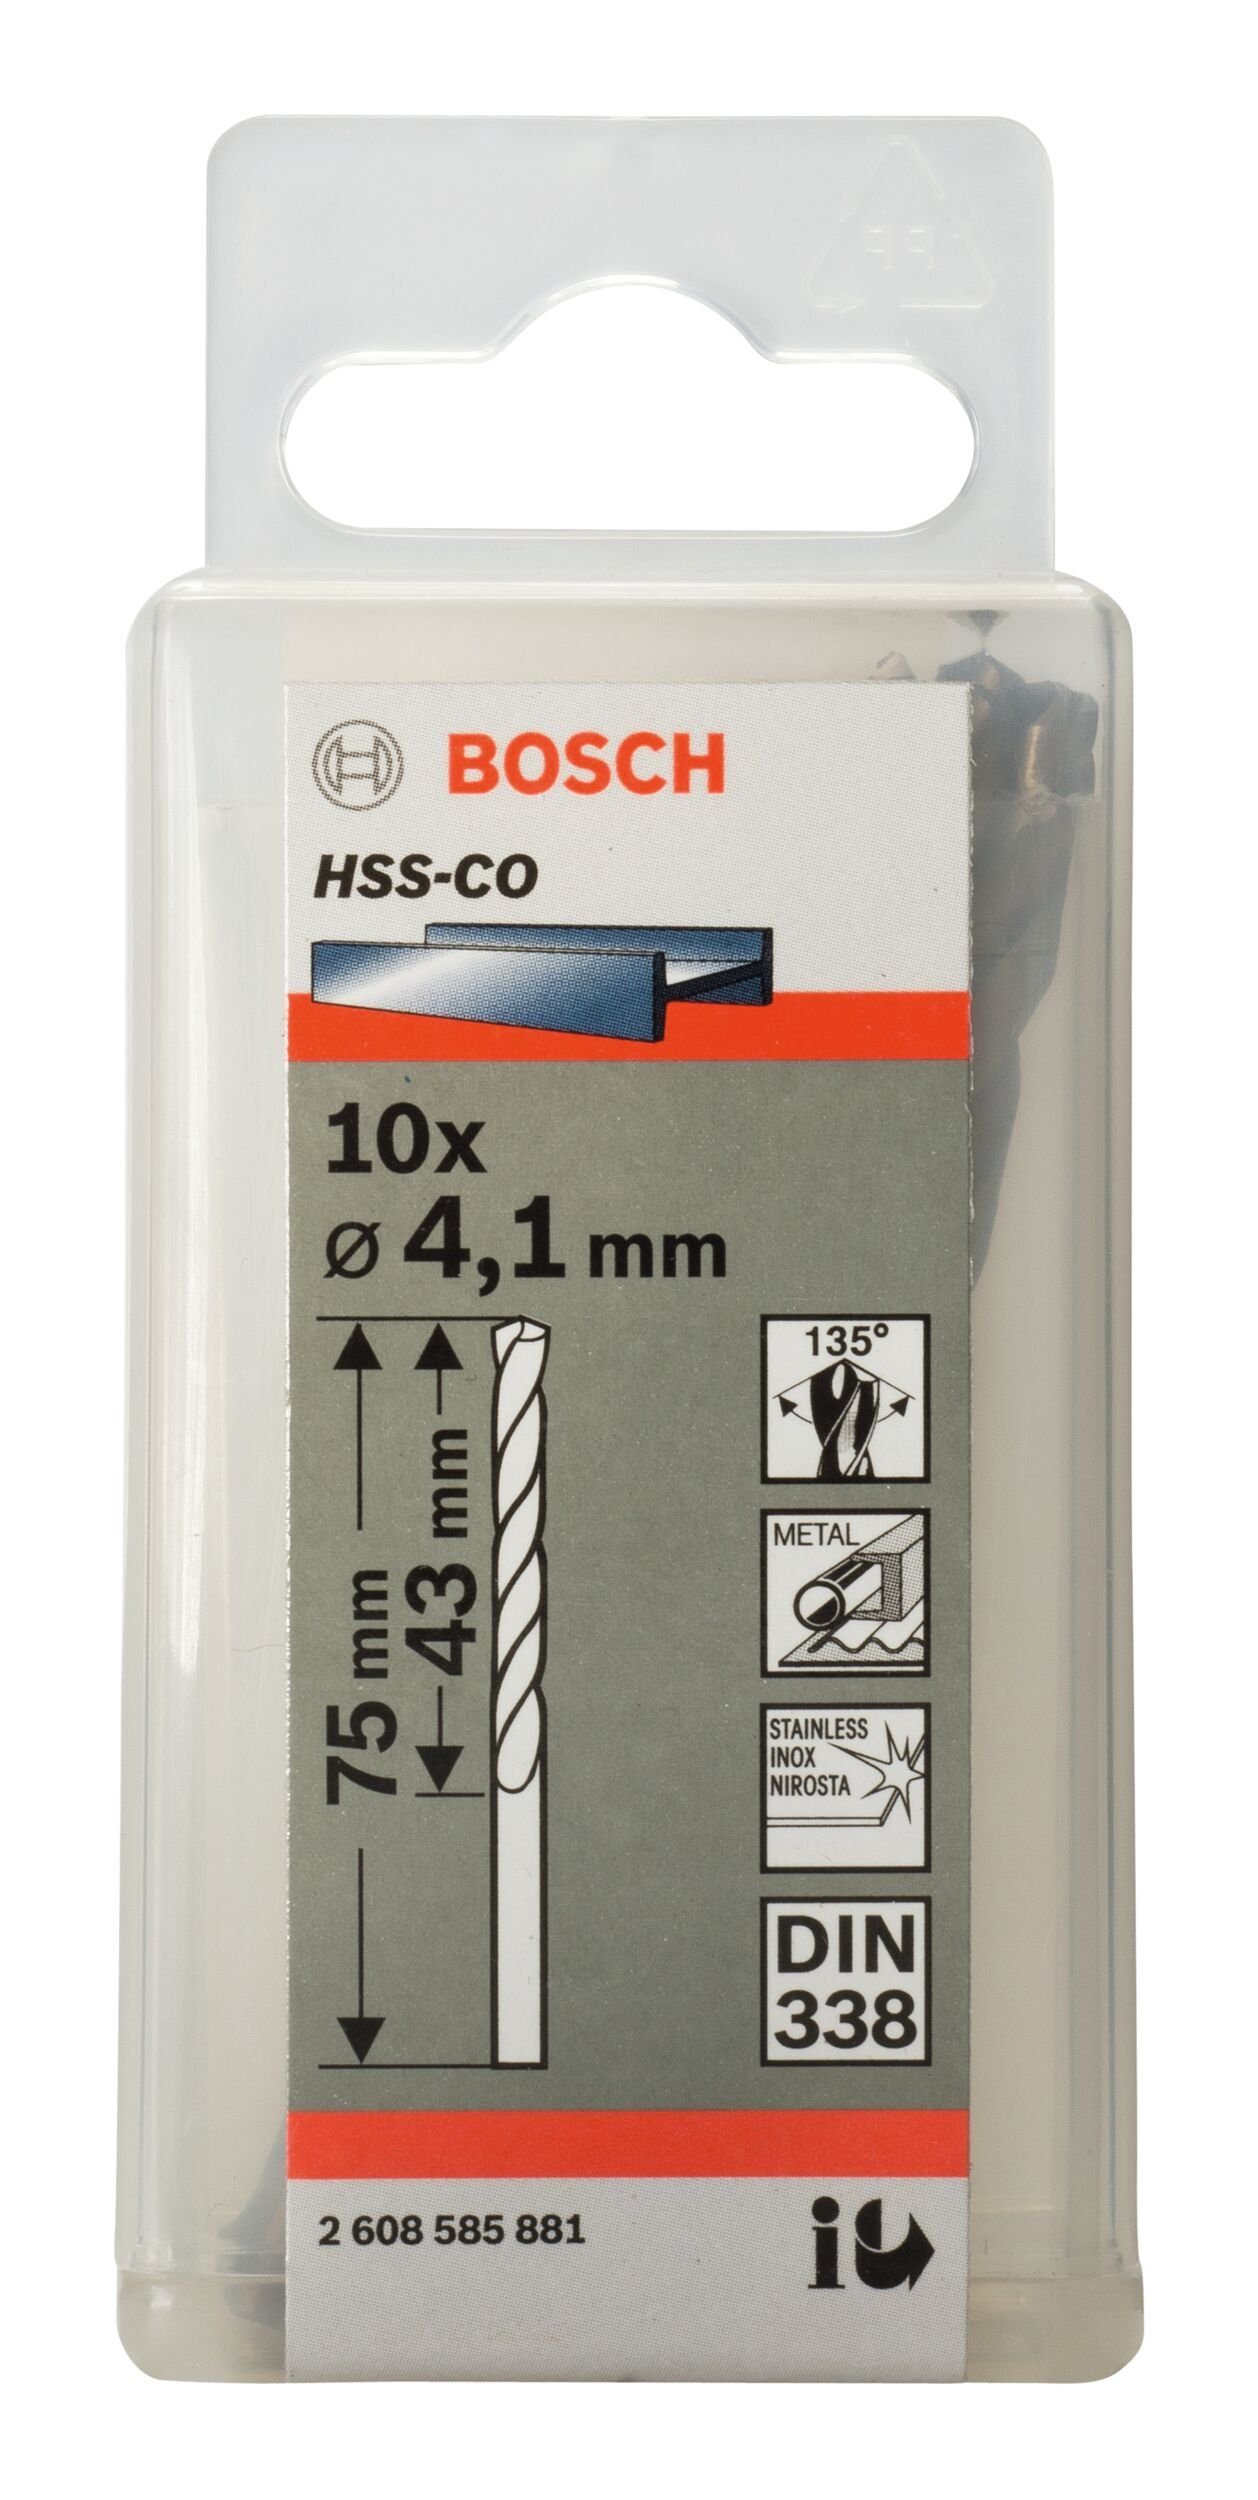 - x 338) x BOSCH (DIN HSS-Co mm 75 43 4,1 (10 10er-Pack Stück), Metallbohrer, -